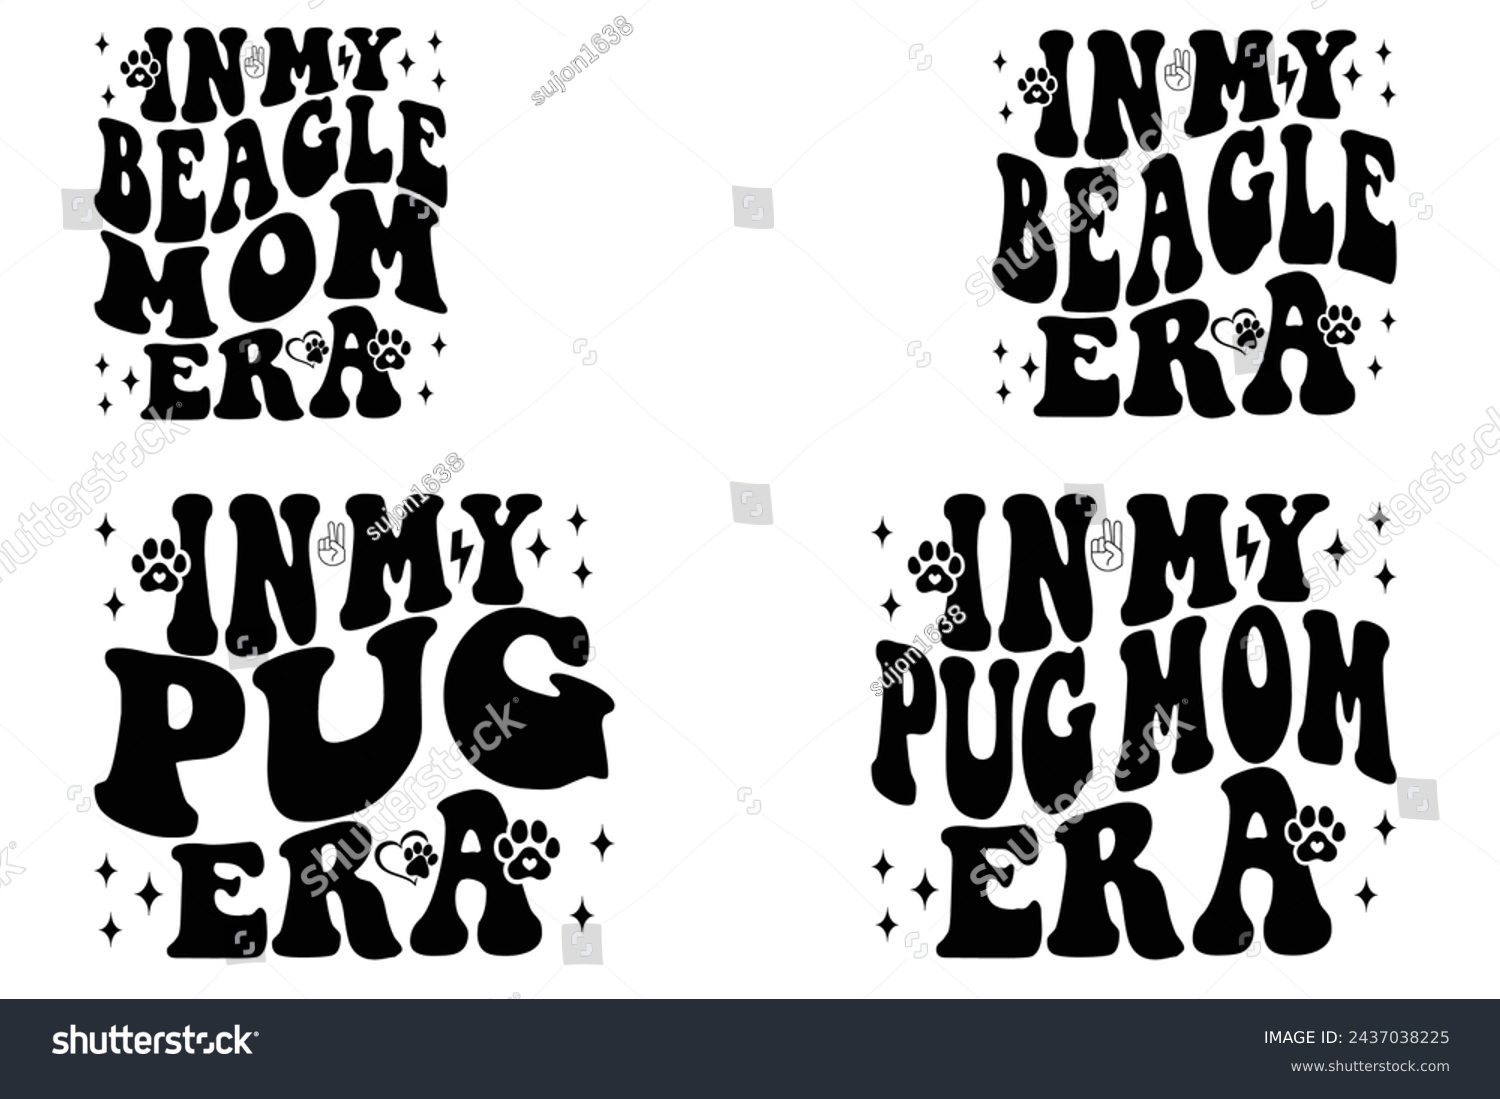 SVG of In my Beagle mom era, in my Beagle era, in my Pug era, in my Pug mom era retro T-shirt svg